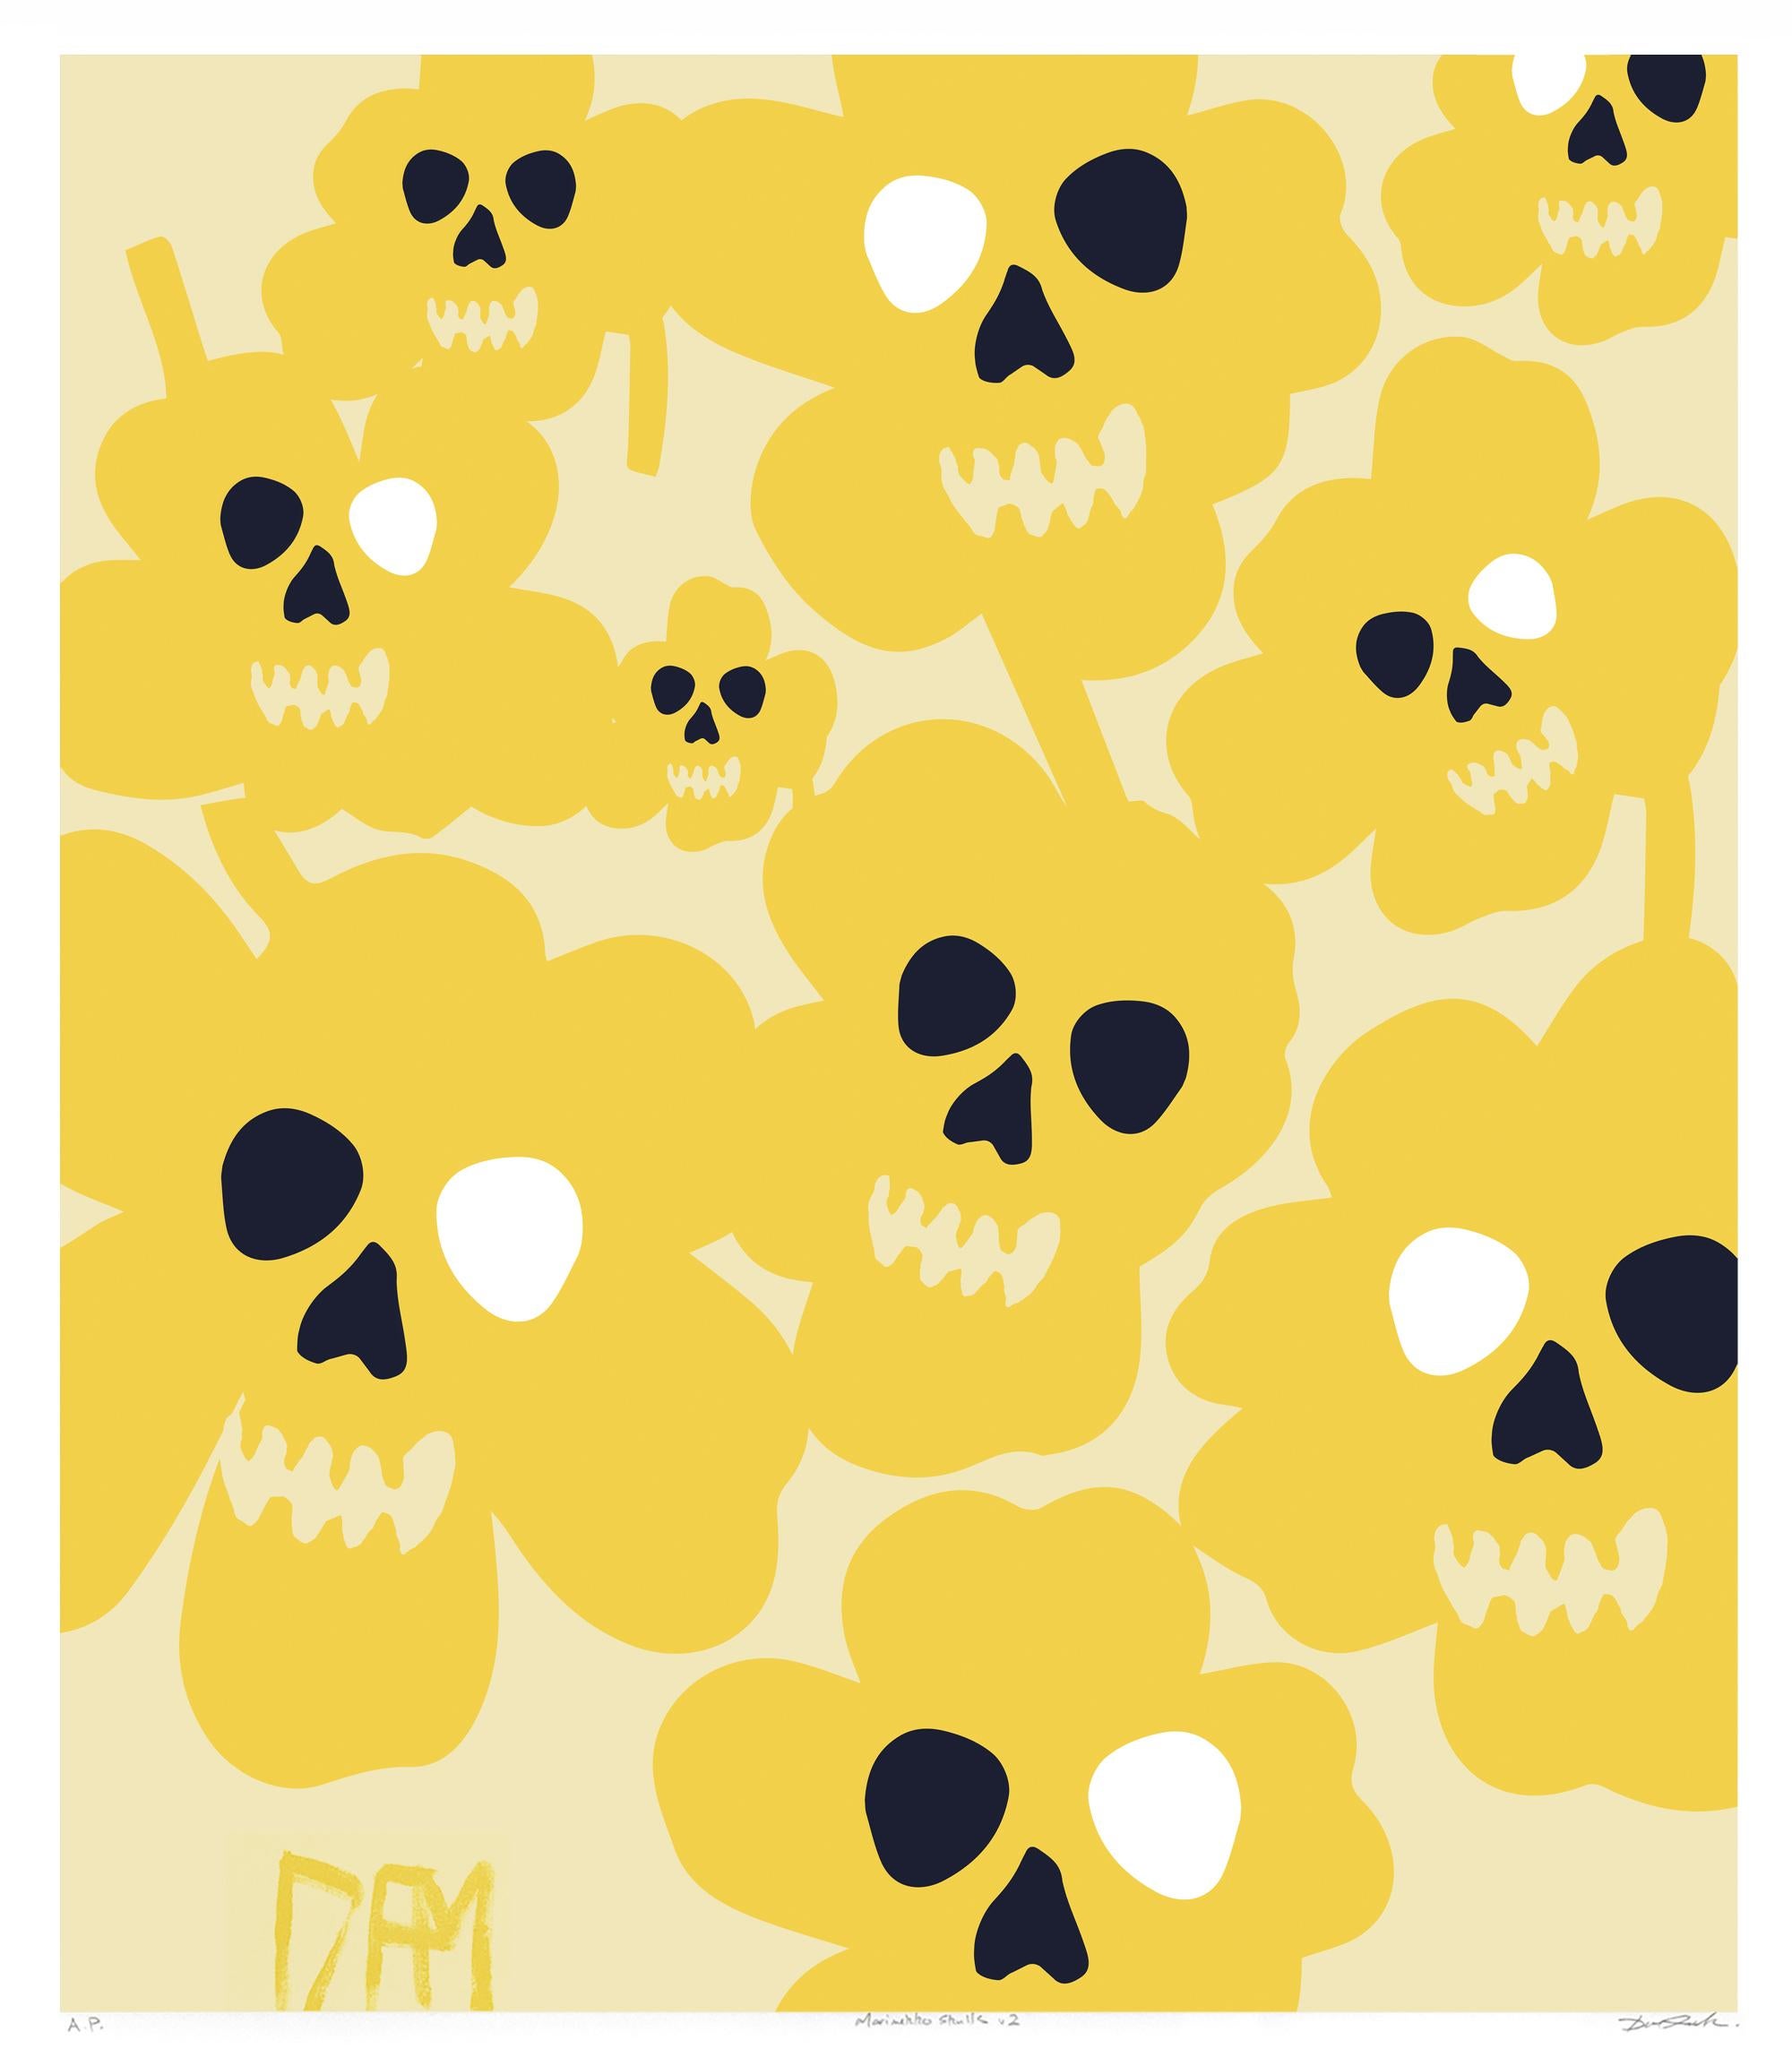 David Fredrik Moussallem Abstract Print - Marimekko flower skulls - street art pop art yellow abstract print 